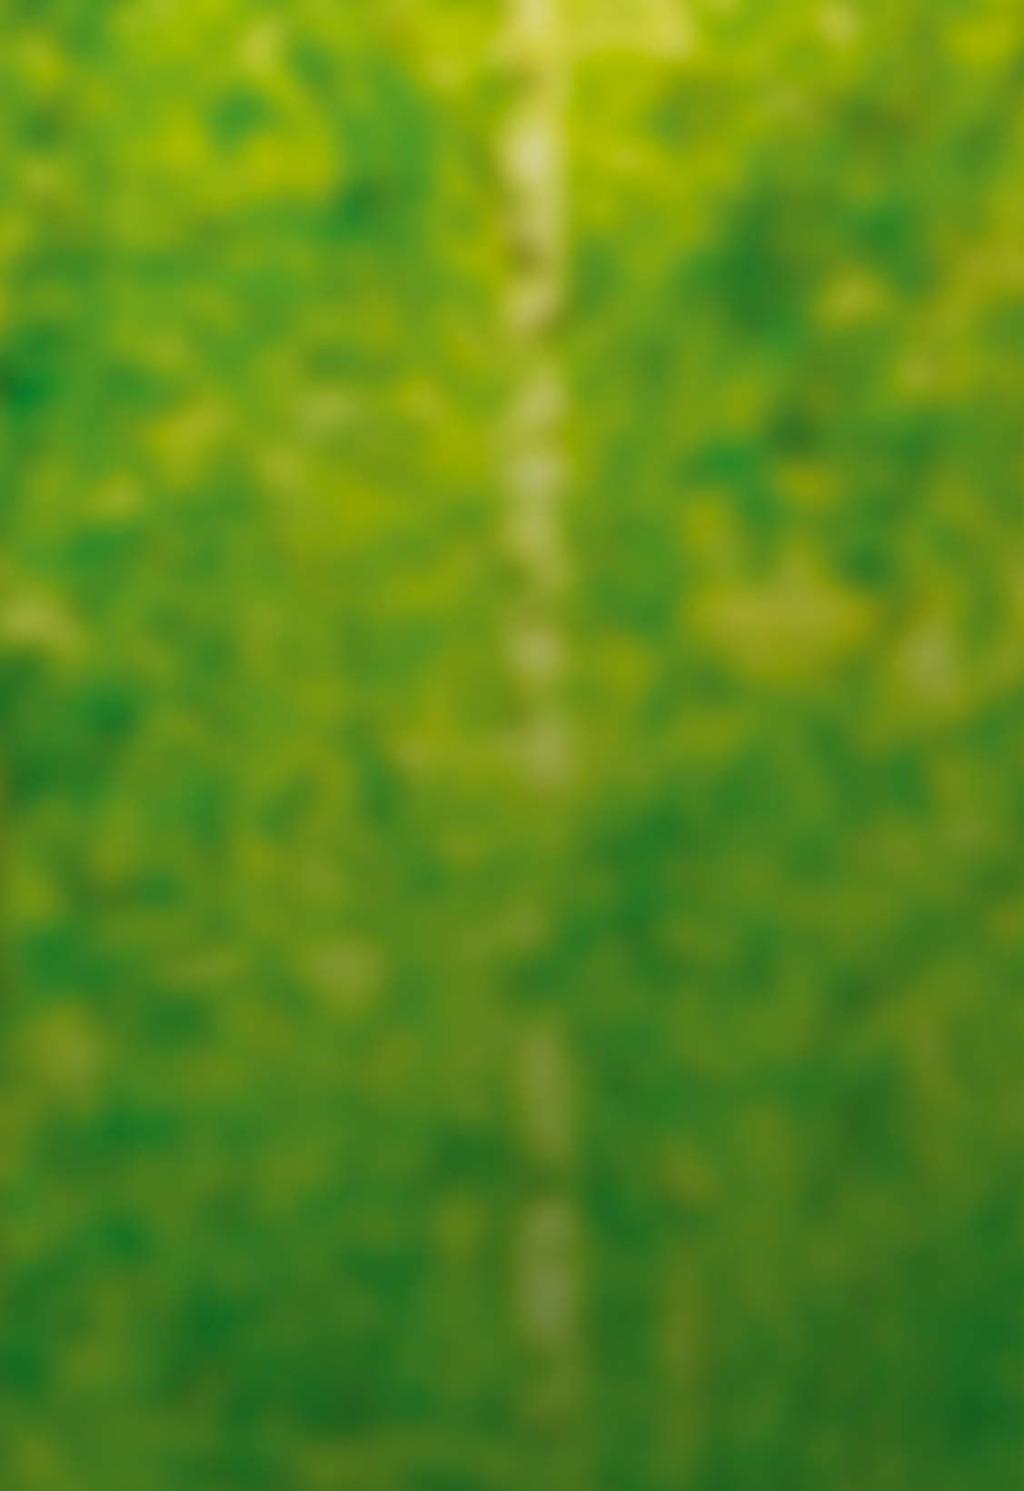 COLOFON Handleiding materiaalpakket: Uitgave Stichting Vogelpark Avifauna, Alphen aan den Rijn 2016 Bezoekadres Hoorn 65, 2404 HG Alphen aan den Rijn Postadres Postbus 31, 2400 AA Alphen aan den Rijn